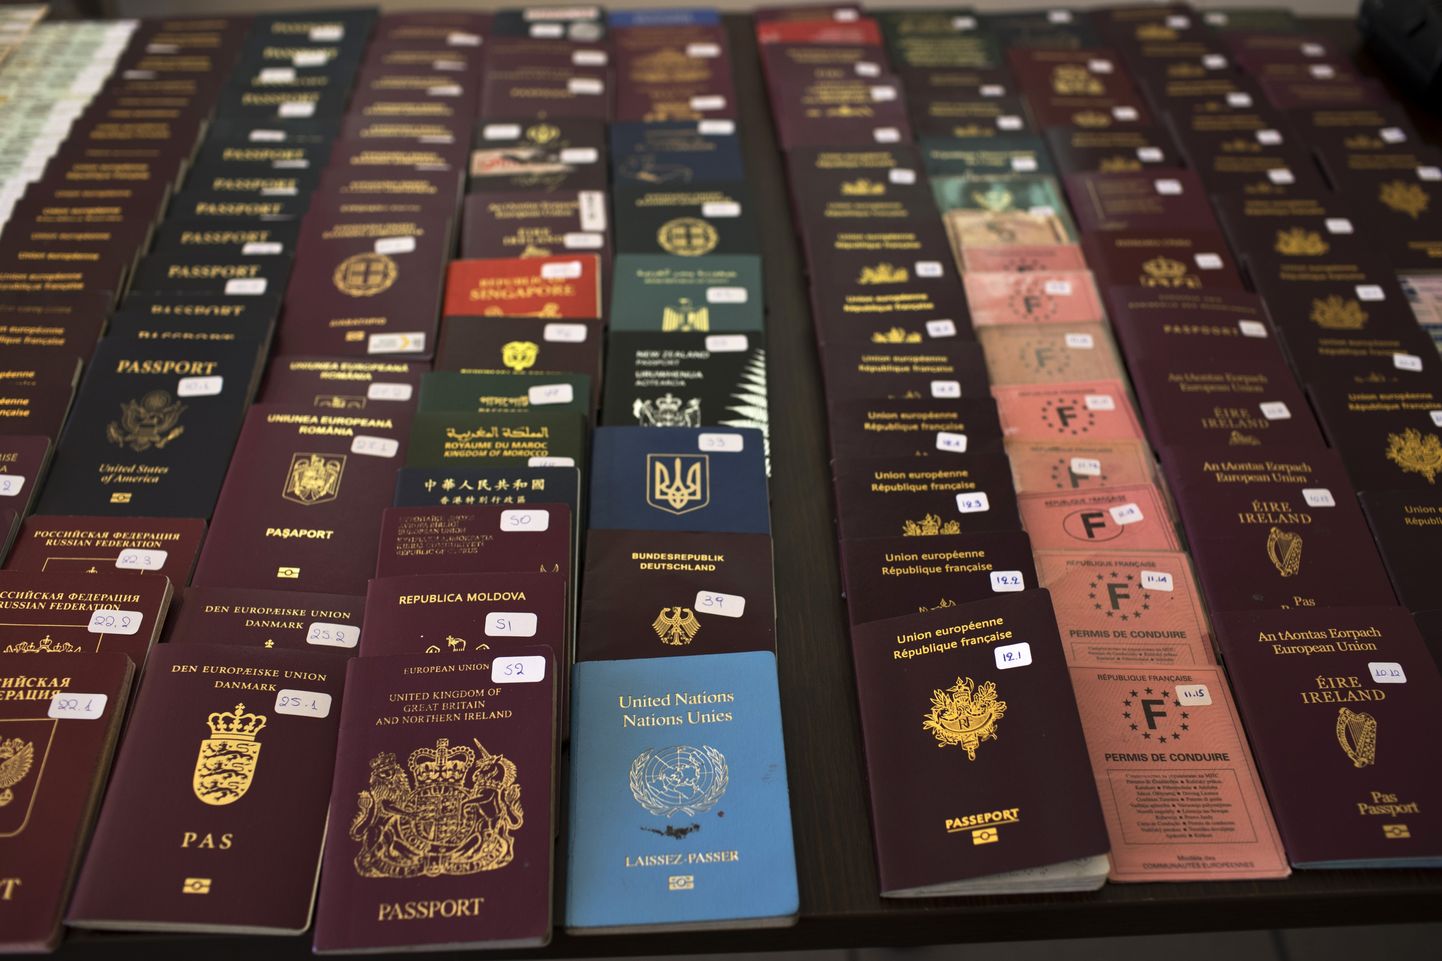 Politsei ütles laupäeval, et lisaks Kreeka passidele leidsid nad ka Rootsi passe ning Kreeka ja Bulgaaria ID-kaarte.